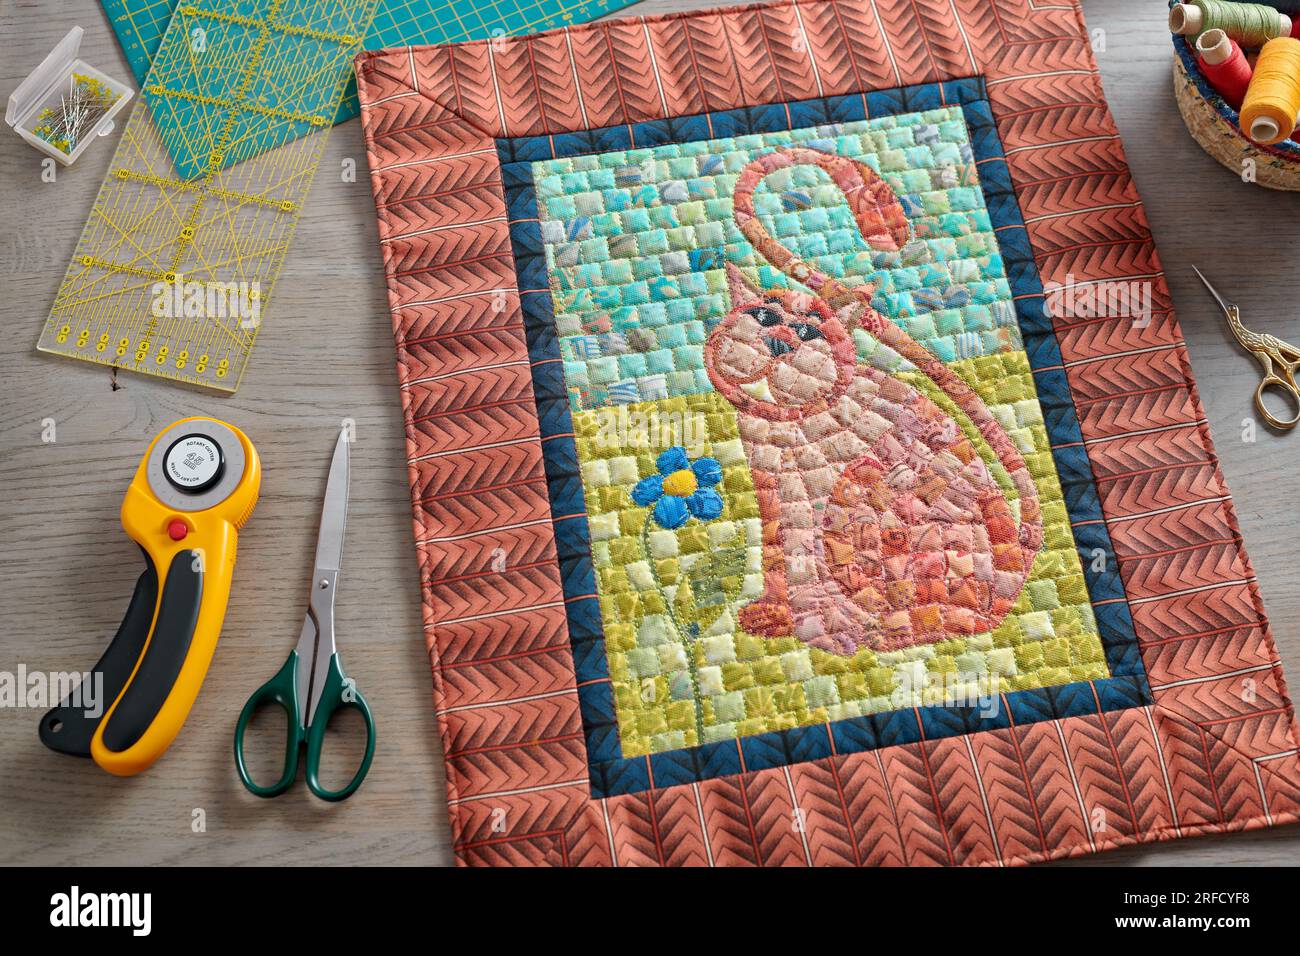 Mini trapunta a mosaico, accessori per cucito e trapuntatura Foto Stock